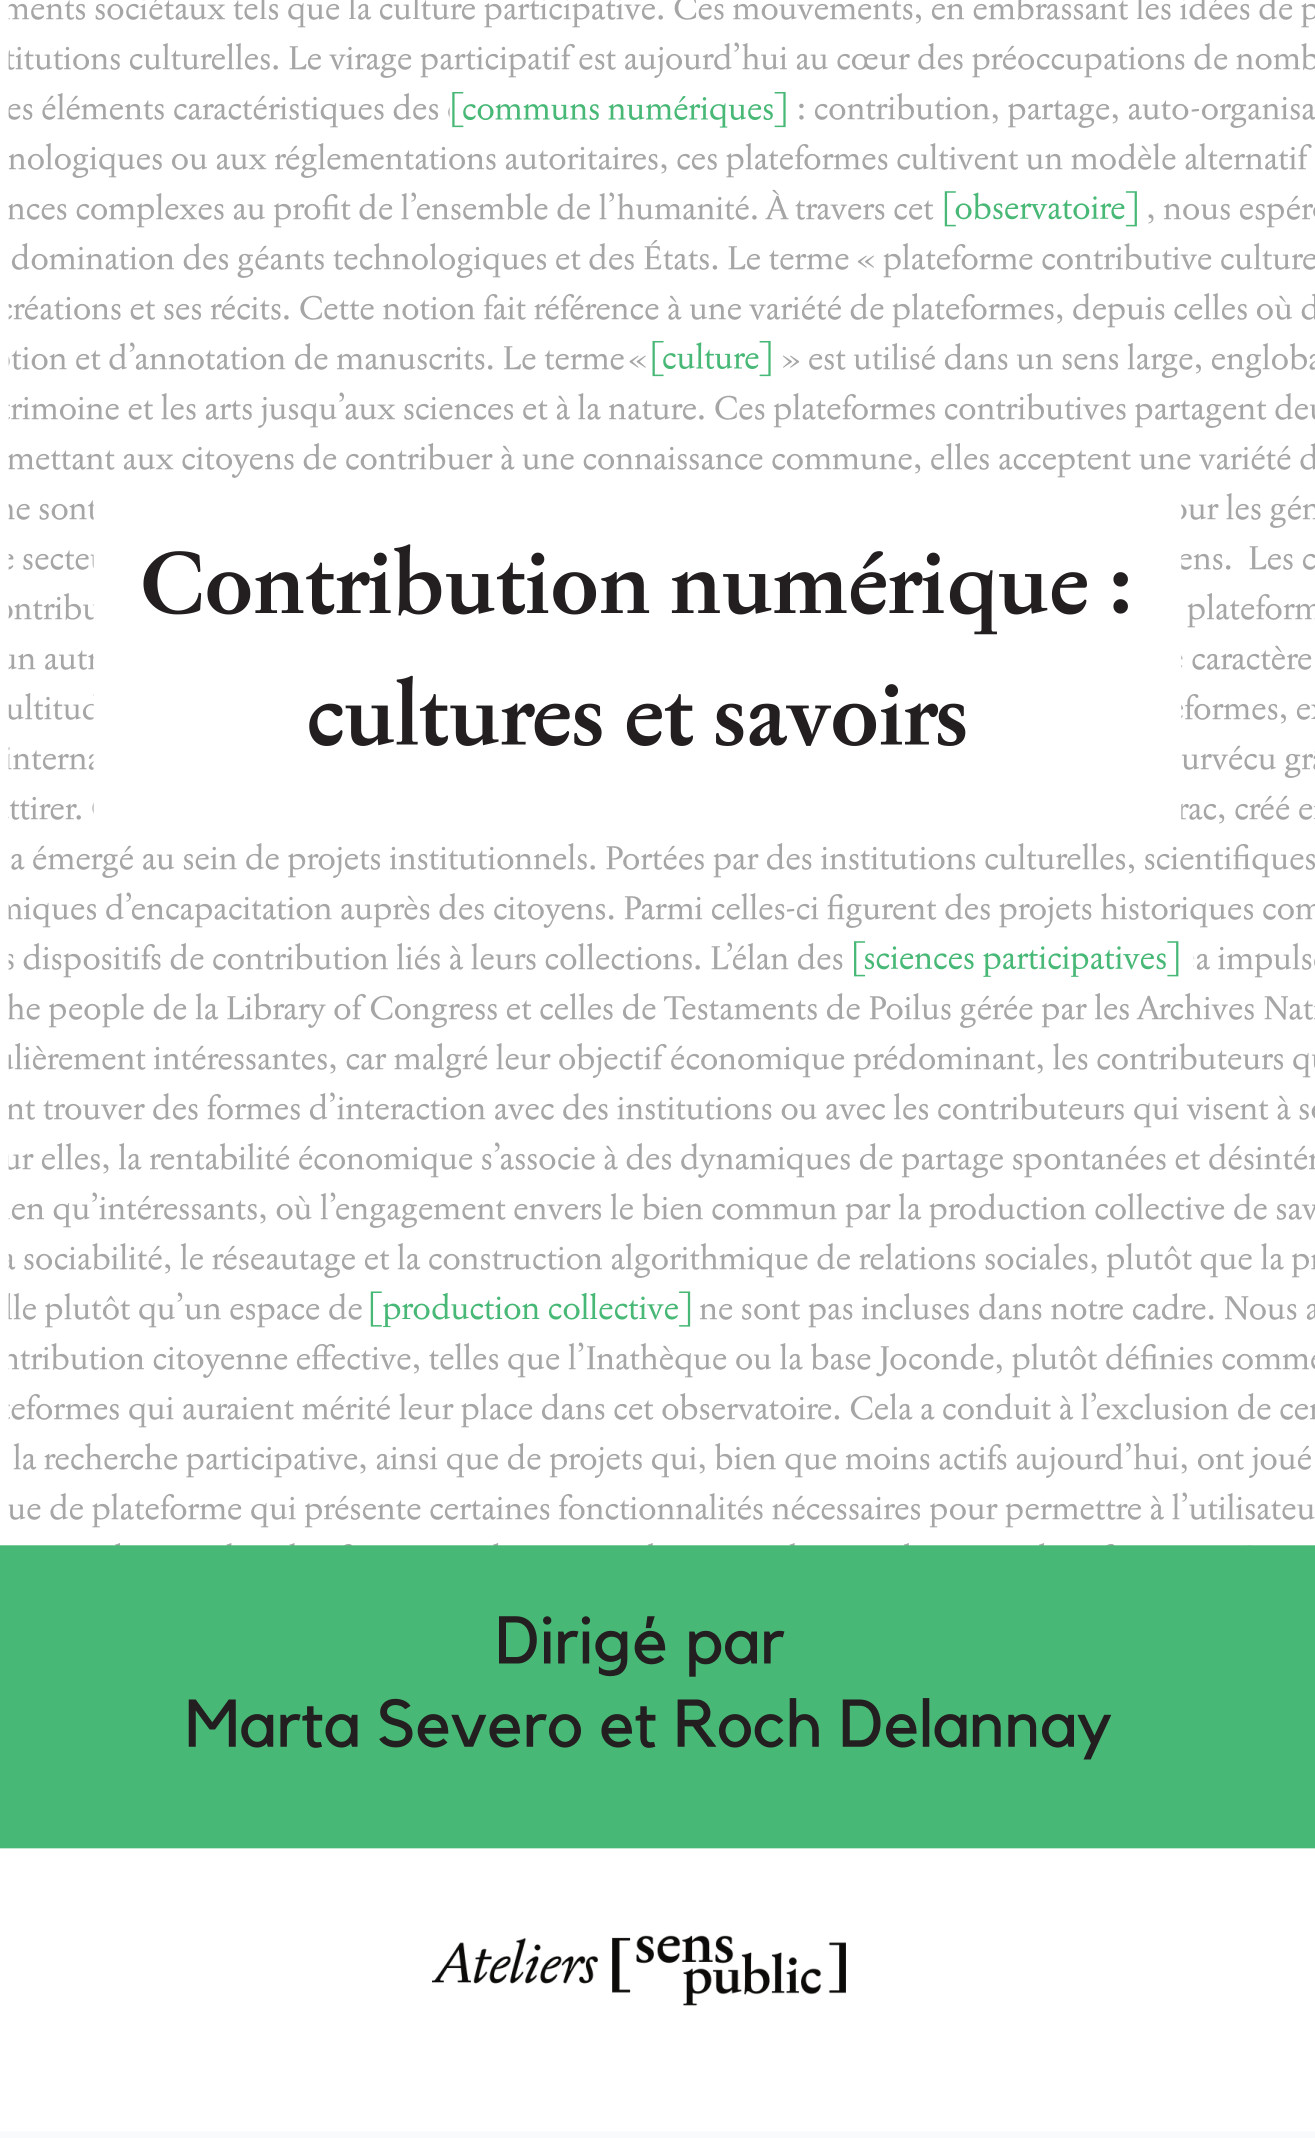 Contribution numérique : cultures et savoirs